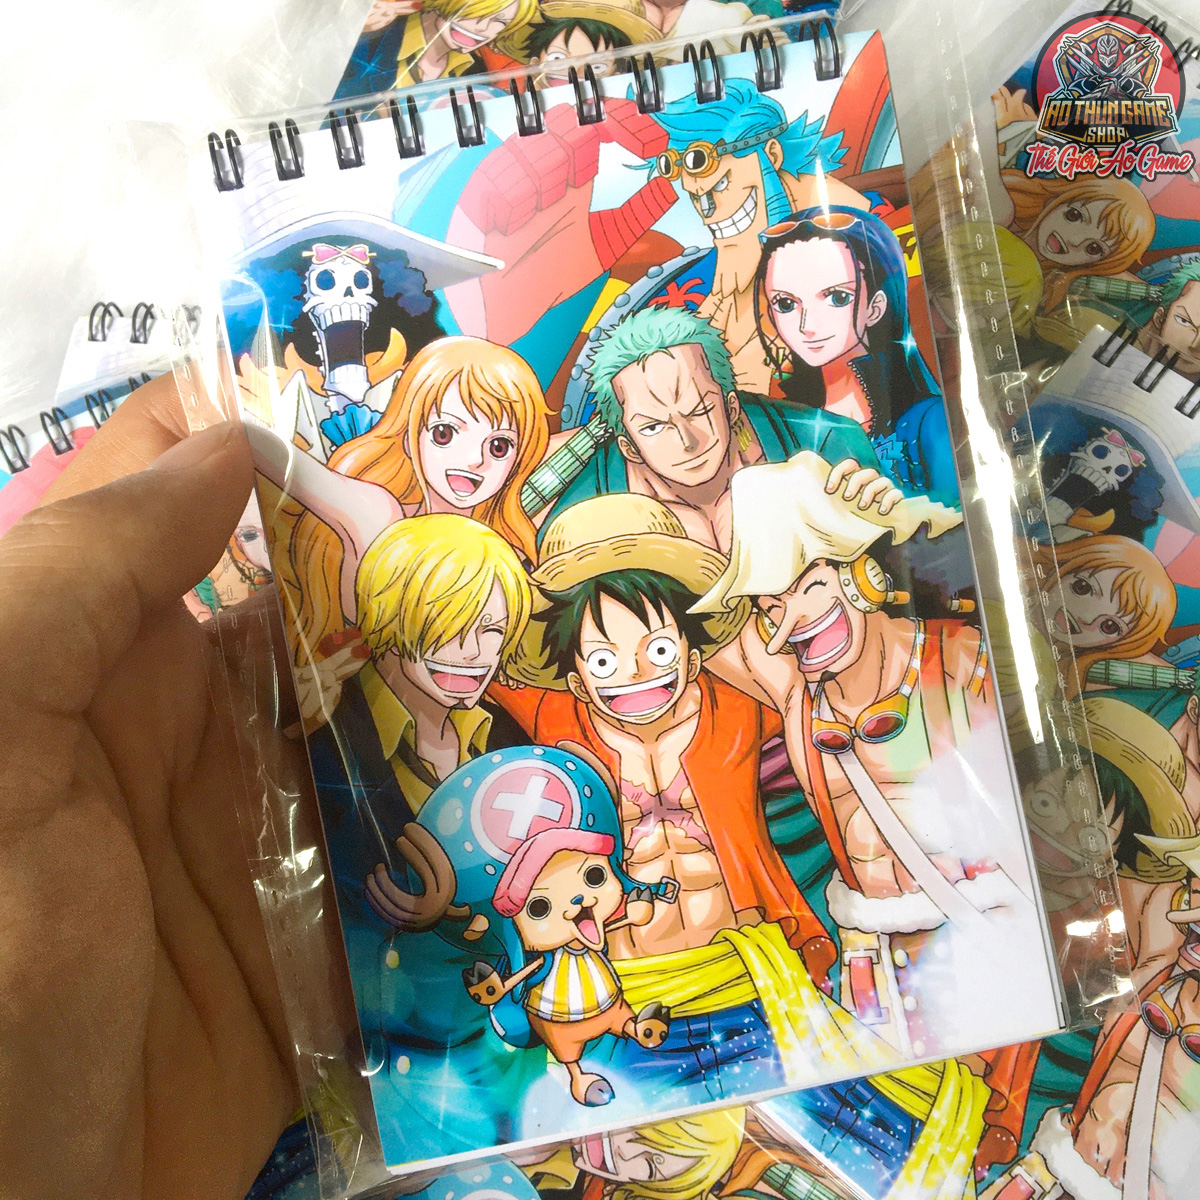 Sổ tay One Piece: Bạn là fan hâm mộ One Piece? Hãy cùng khám phá những bức vẽ tuyệt đẹp trong sổ tay One Piece này. Bữa cơm của Luffy, chuyến phiêu lưu trên biển và nhiều hình ảnh đầy cảm hứng sẽ được tái hiện trên trang giấy của sổ tay.